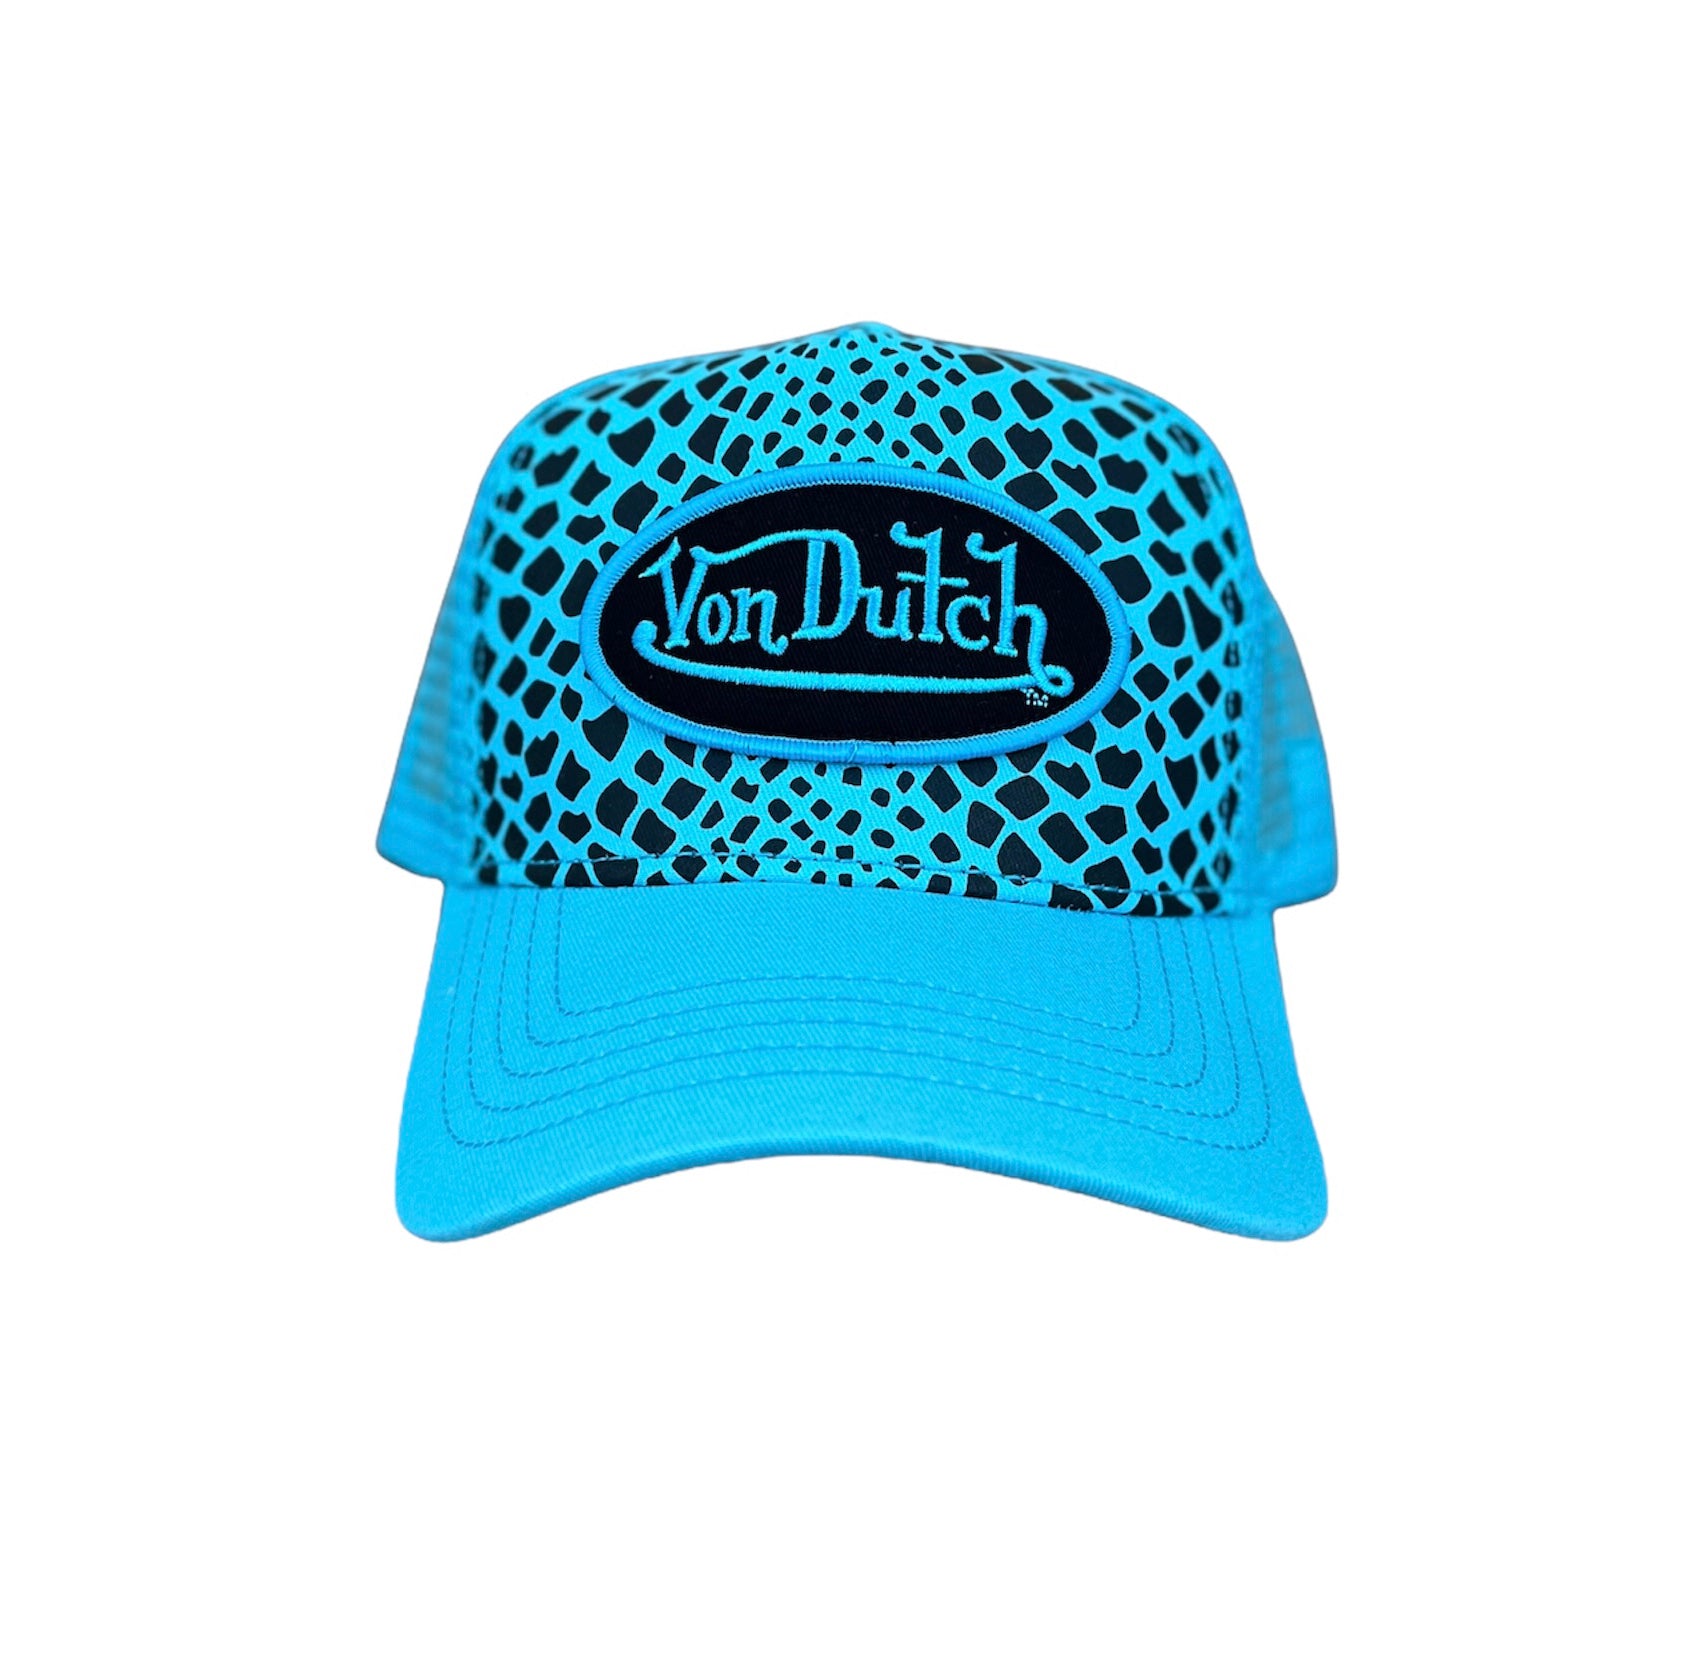 Von Dutch Baby Blue Animal print trucker hat